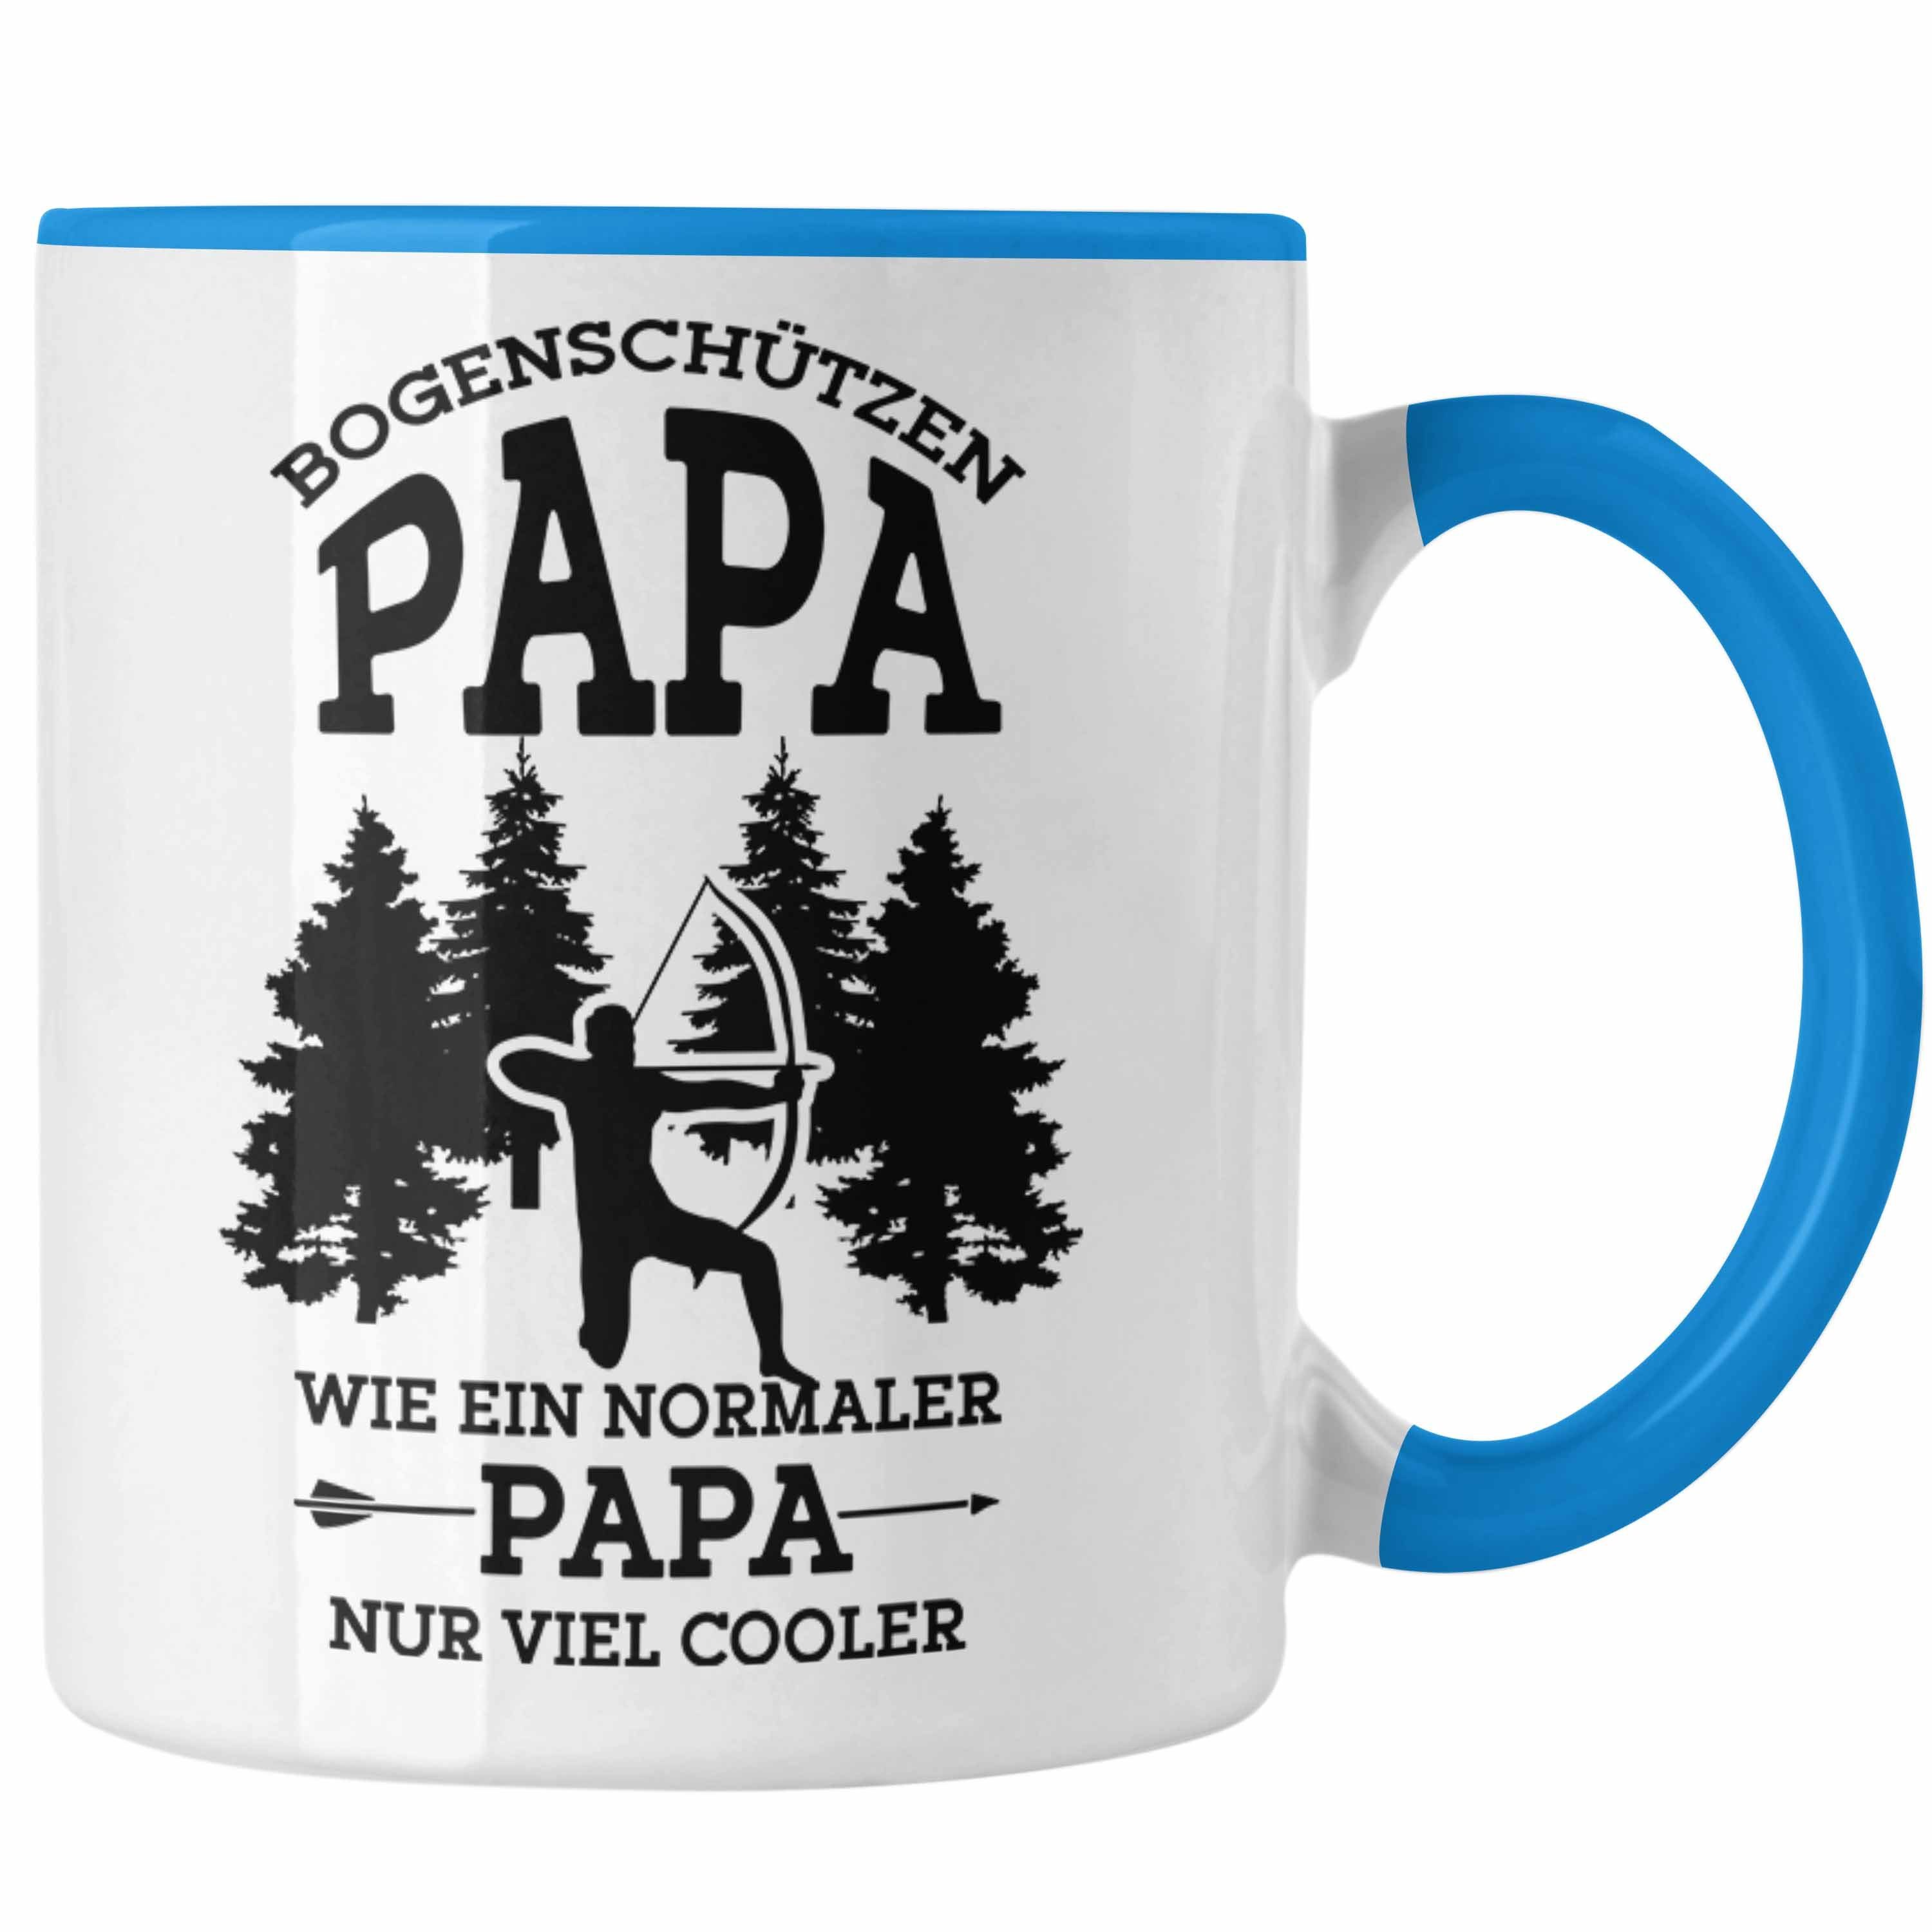 Trendation Tasse Lustige Bogenschießen Tasse für Papa Bogenschütze Geschenkidee Vatert Blau